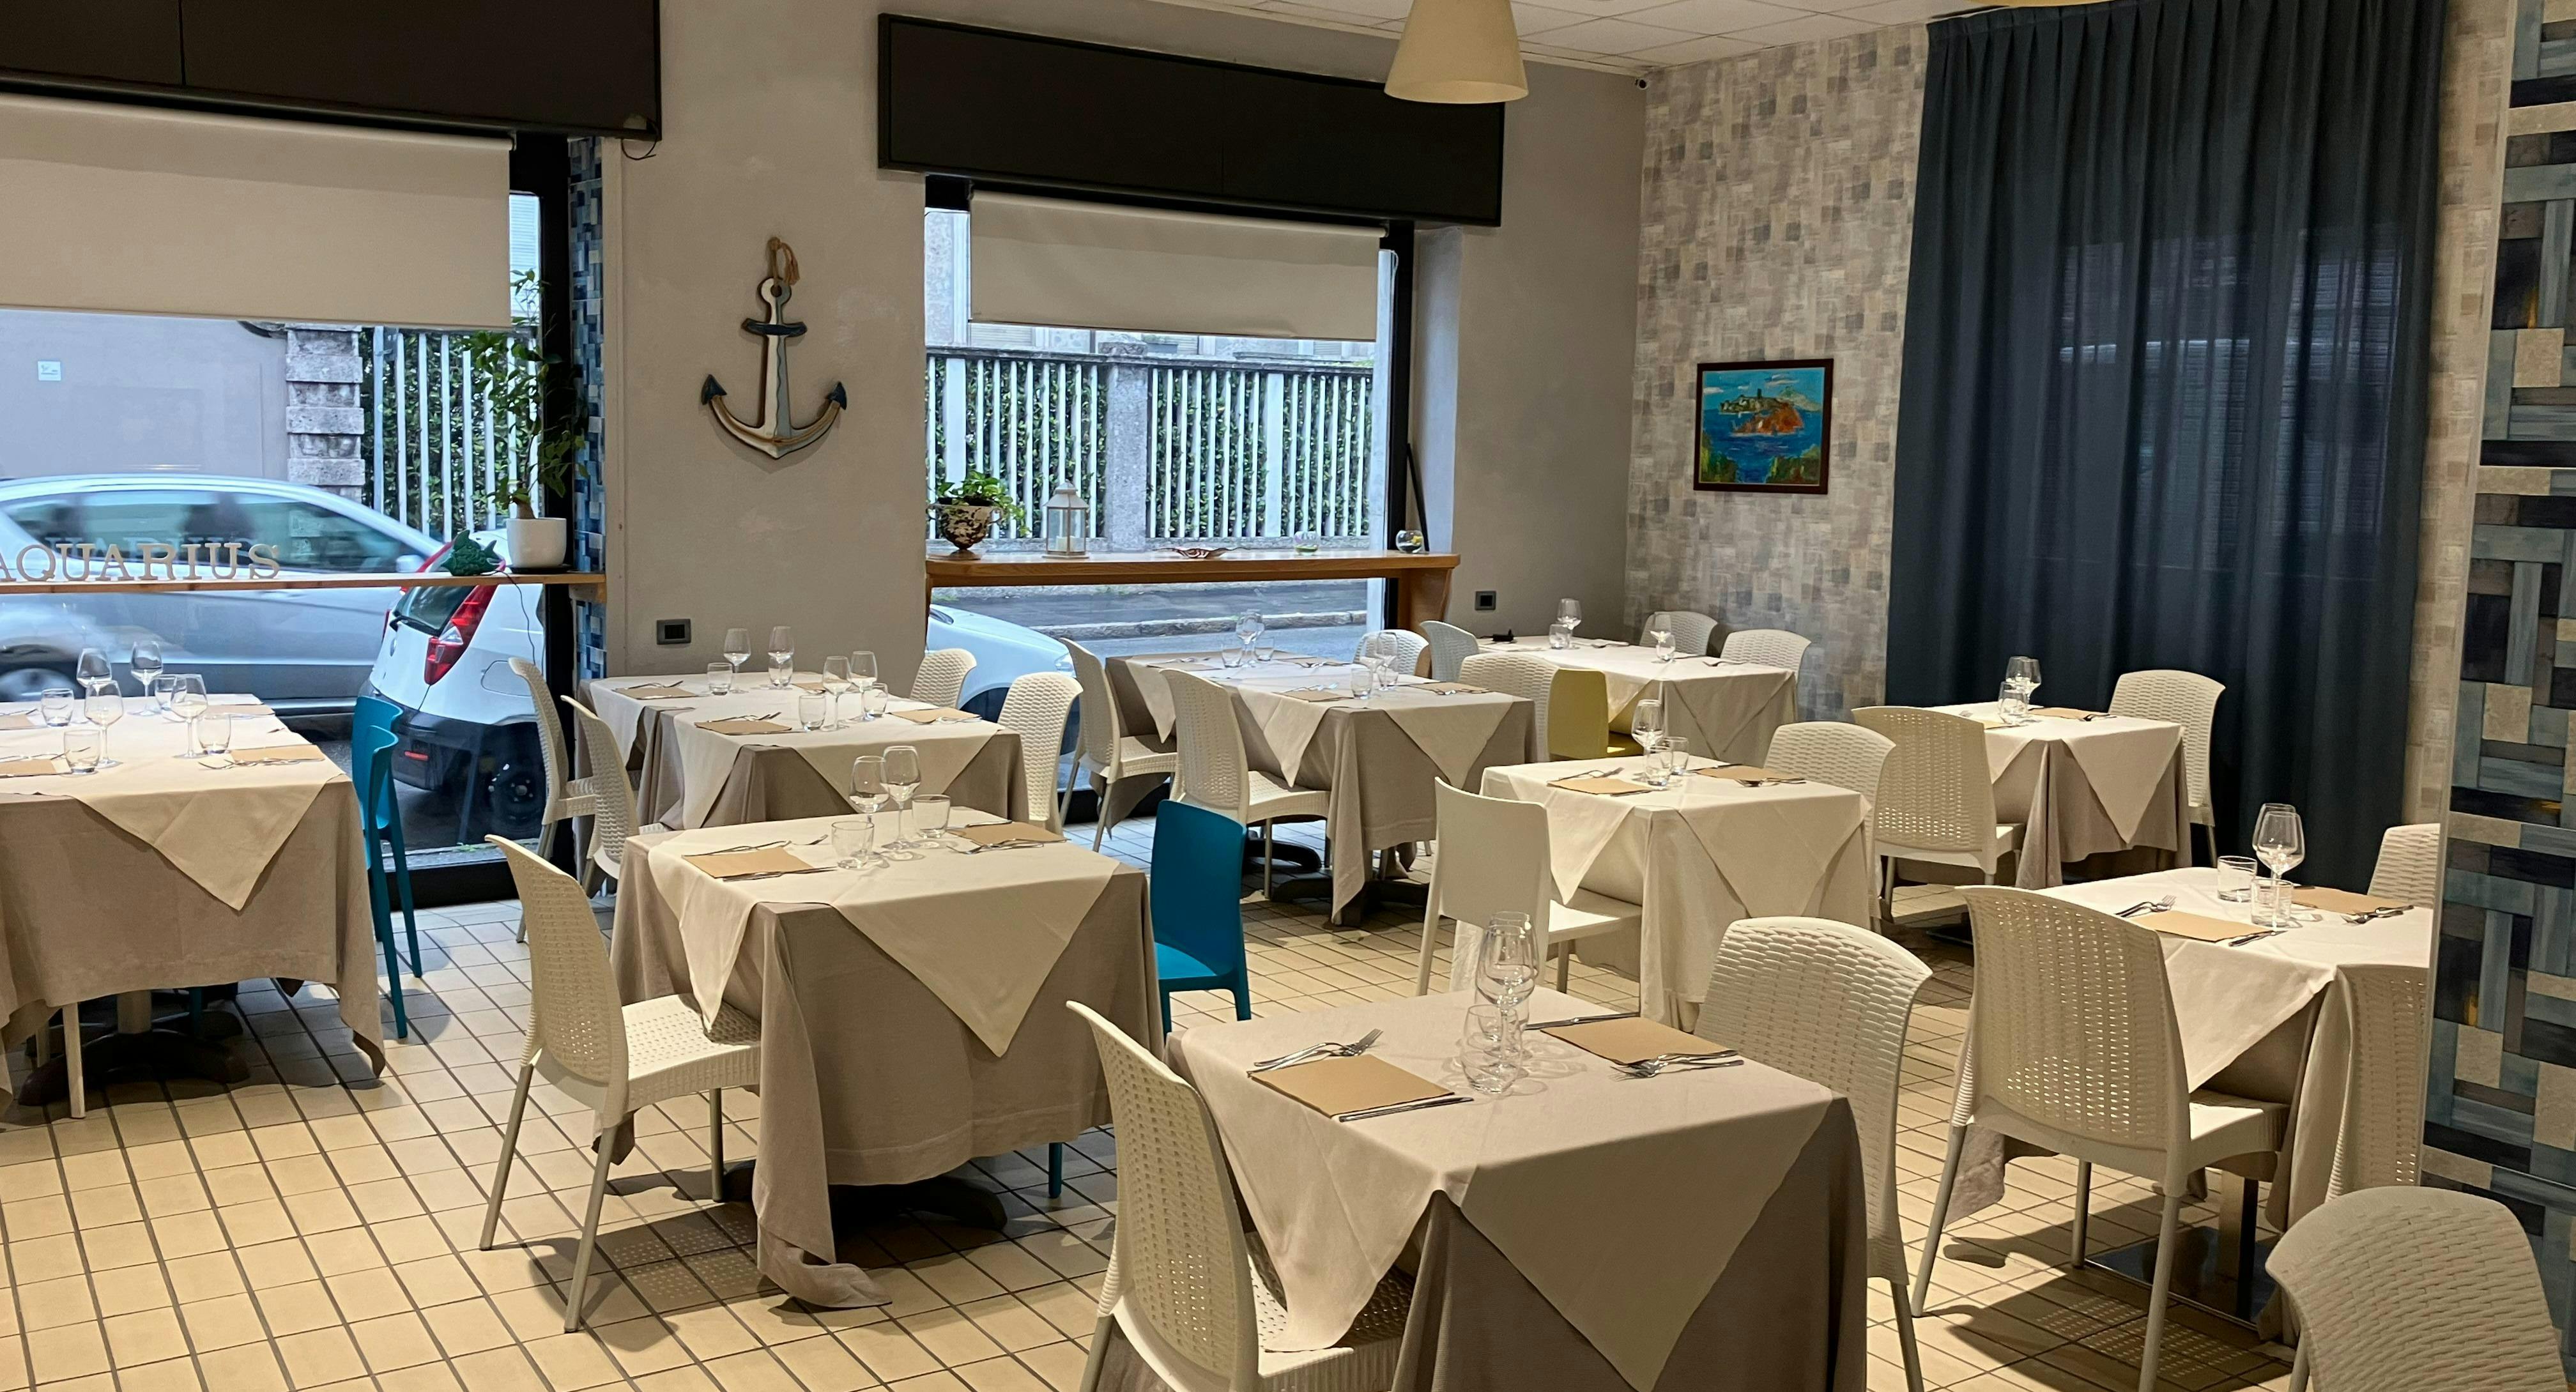 Foto del ristorante Ristorante Aquarius a Monza, Monza e Brianza